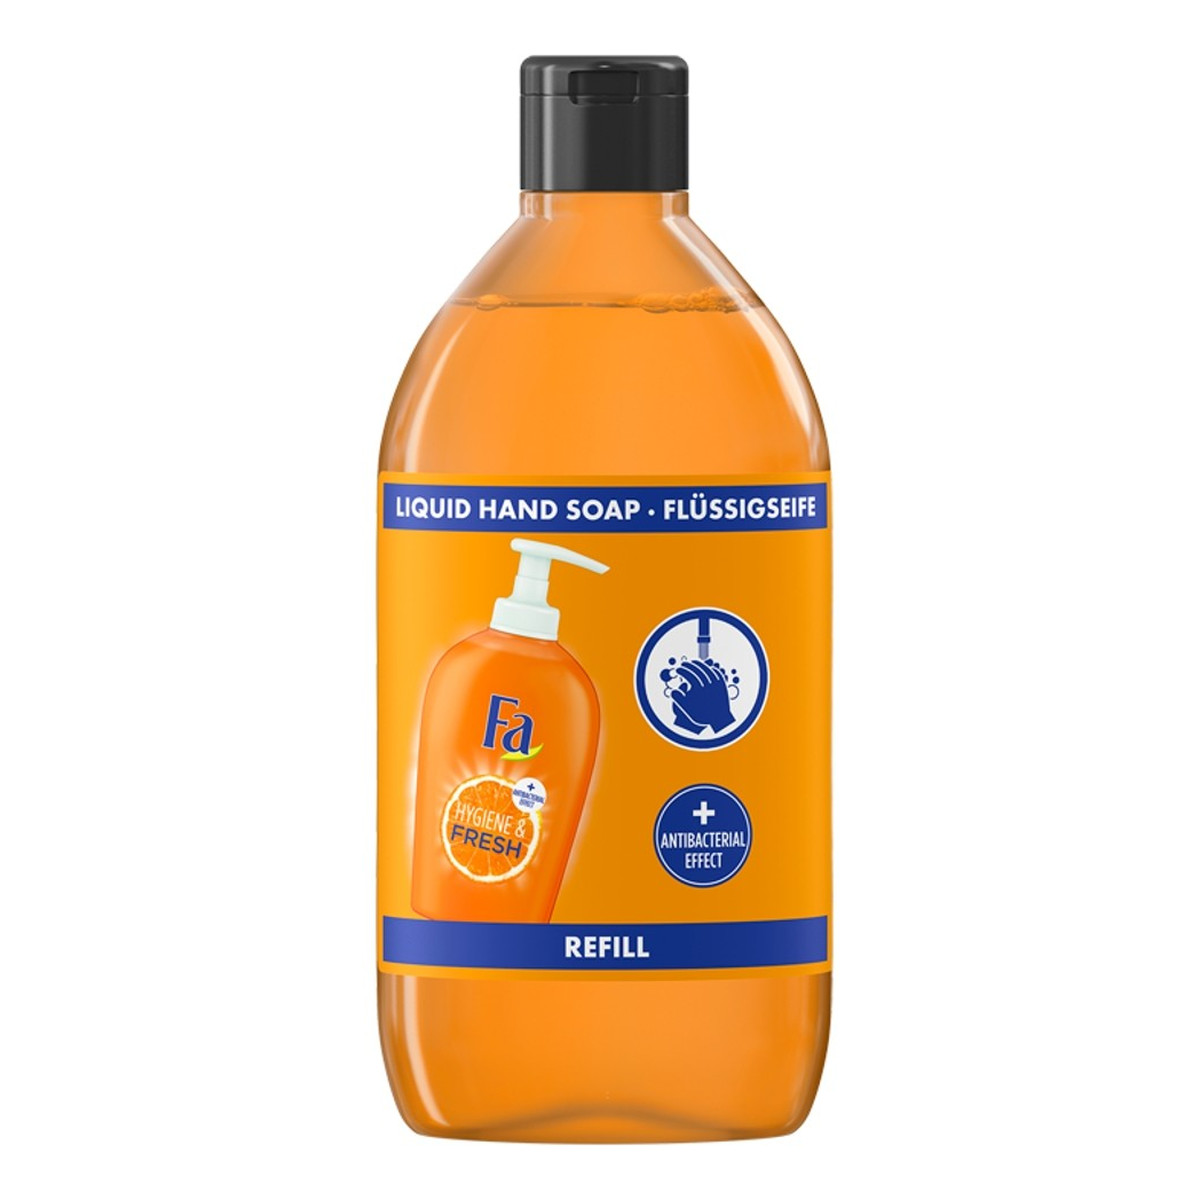 Fa Hygiene & Fresh Mydło w płynie antybakteryjne Orange zapas 385ml